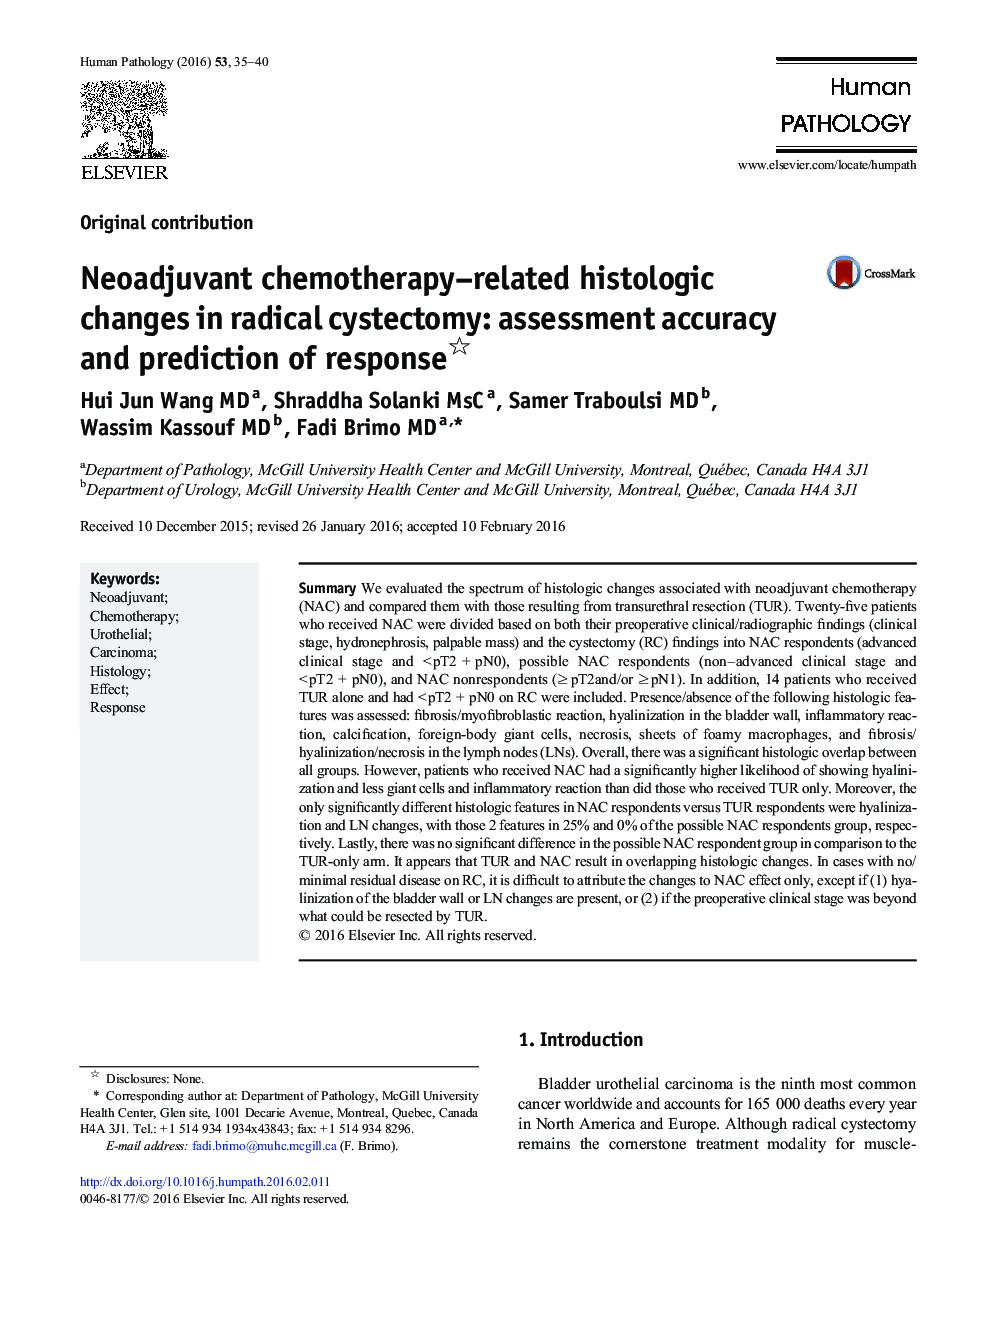 تغییرات هیستولوژیکی مرتبط با شیمی درمانی نئوادجوتان در پاتولوژی رادیکال: دقت ارزیابی و پیش بینی پاسخ 